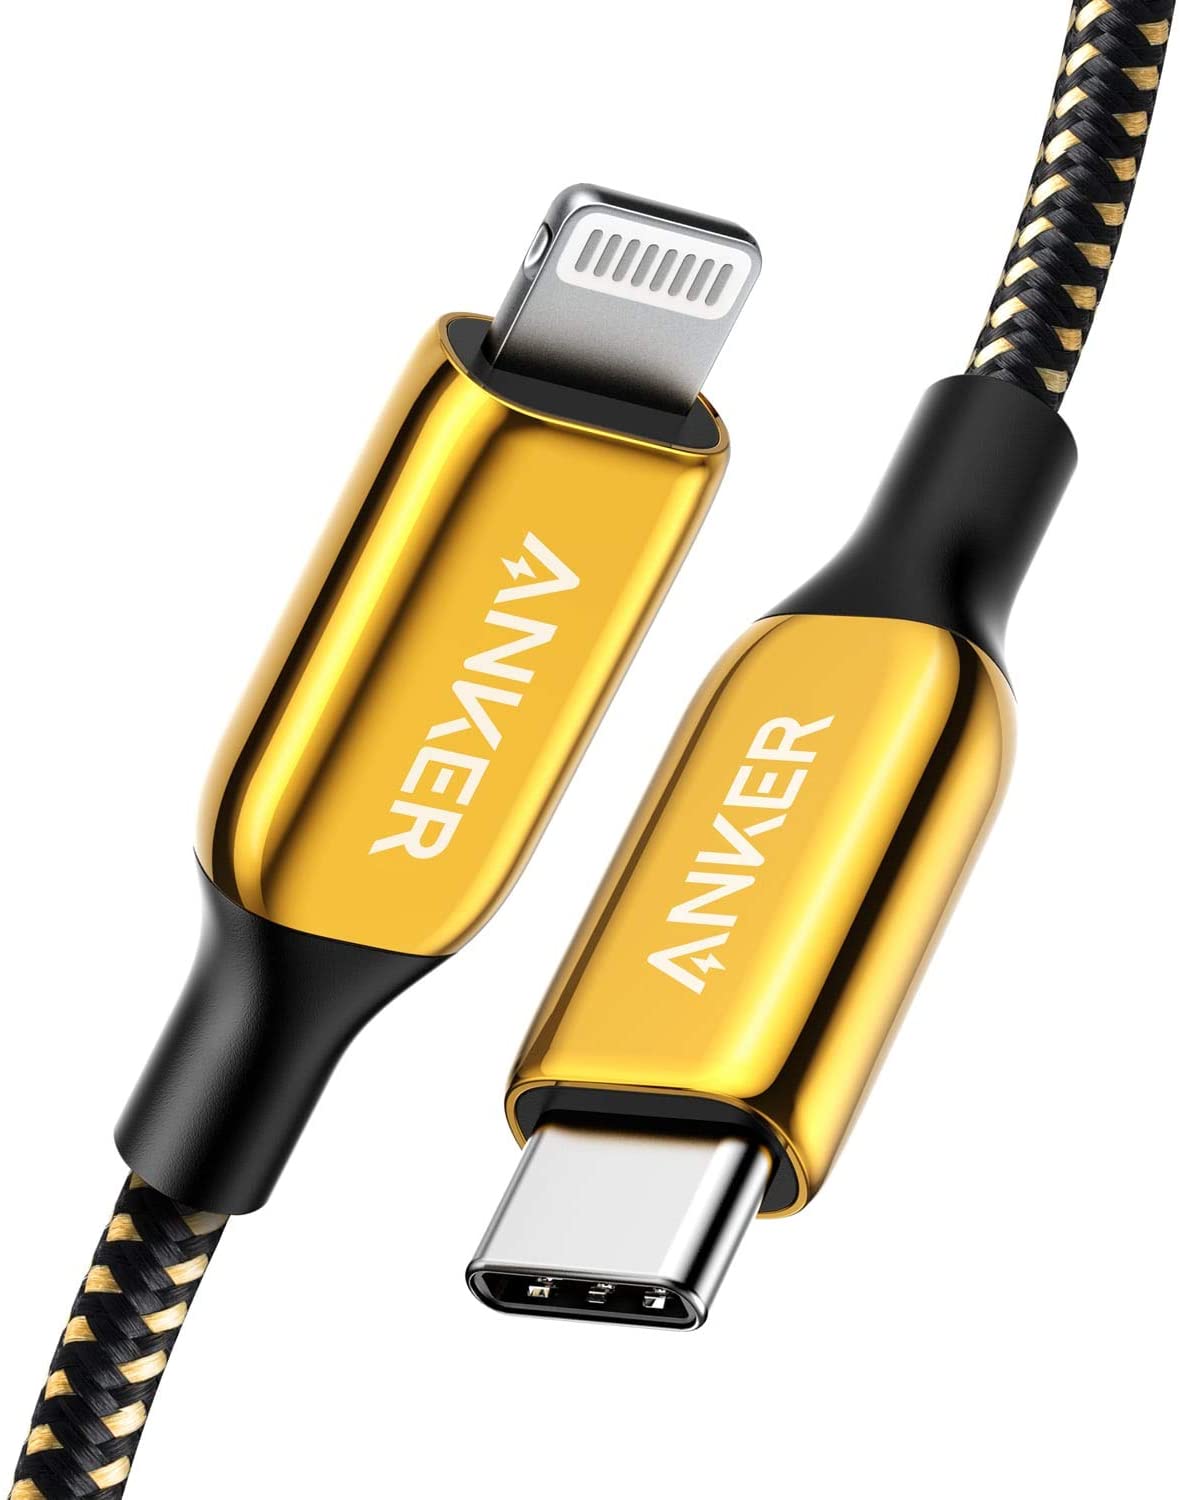 Anker lança cabo Lightning banhado a ouro 24K; set-top box da Philips Hue, Netatmo e elago têm novidades – MacMagazine.com.br – [Blog GigaOutlet]